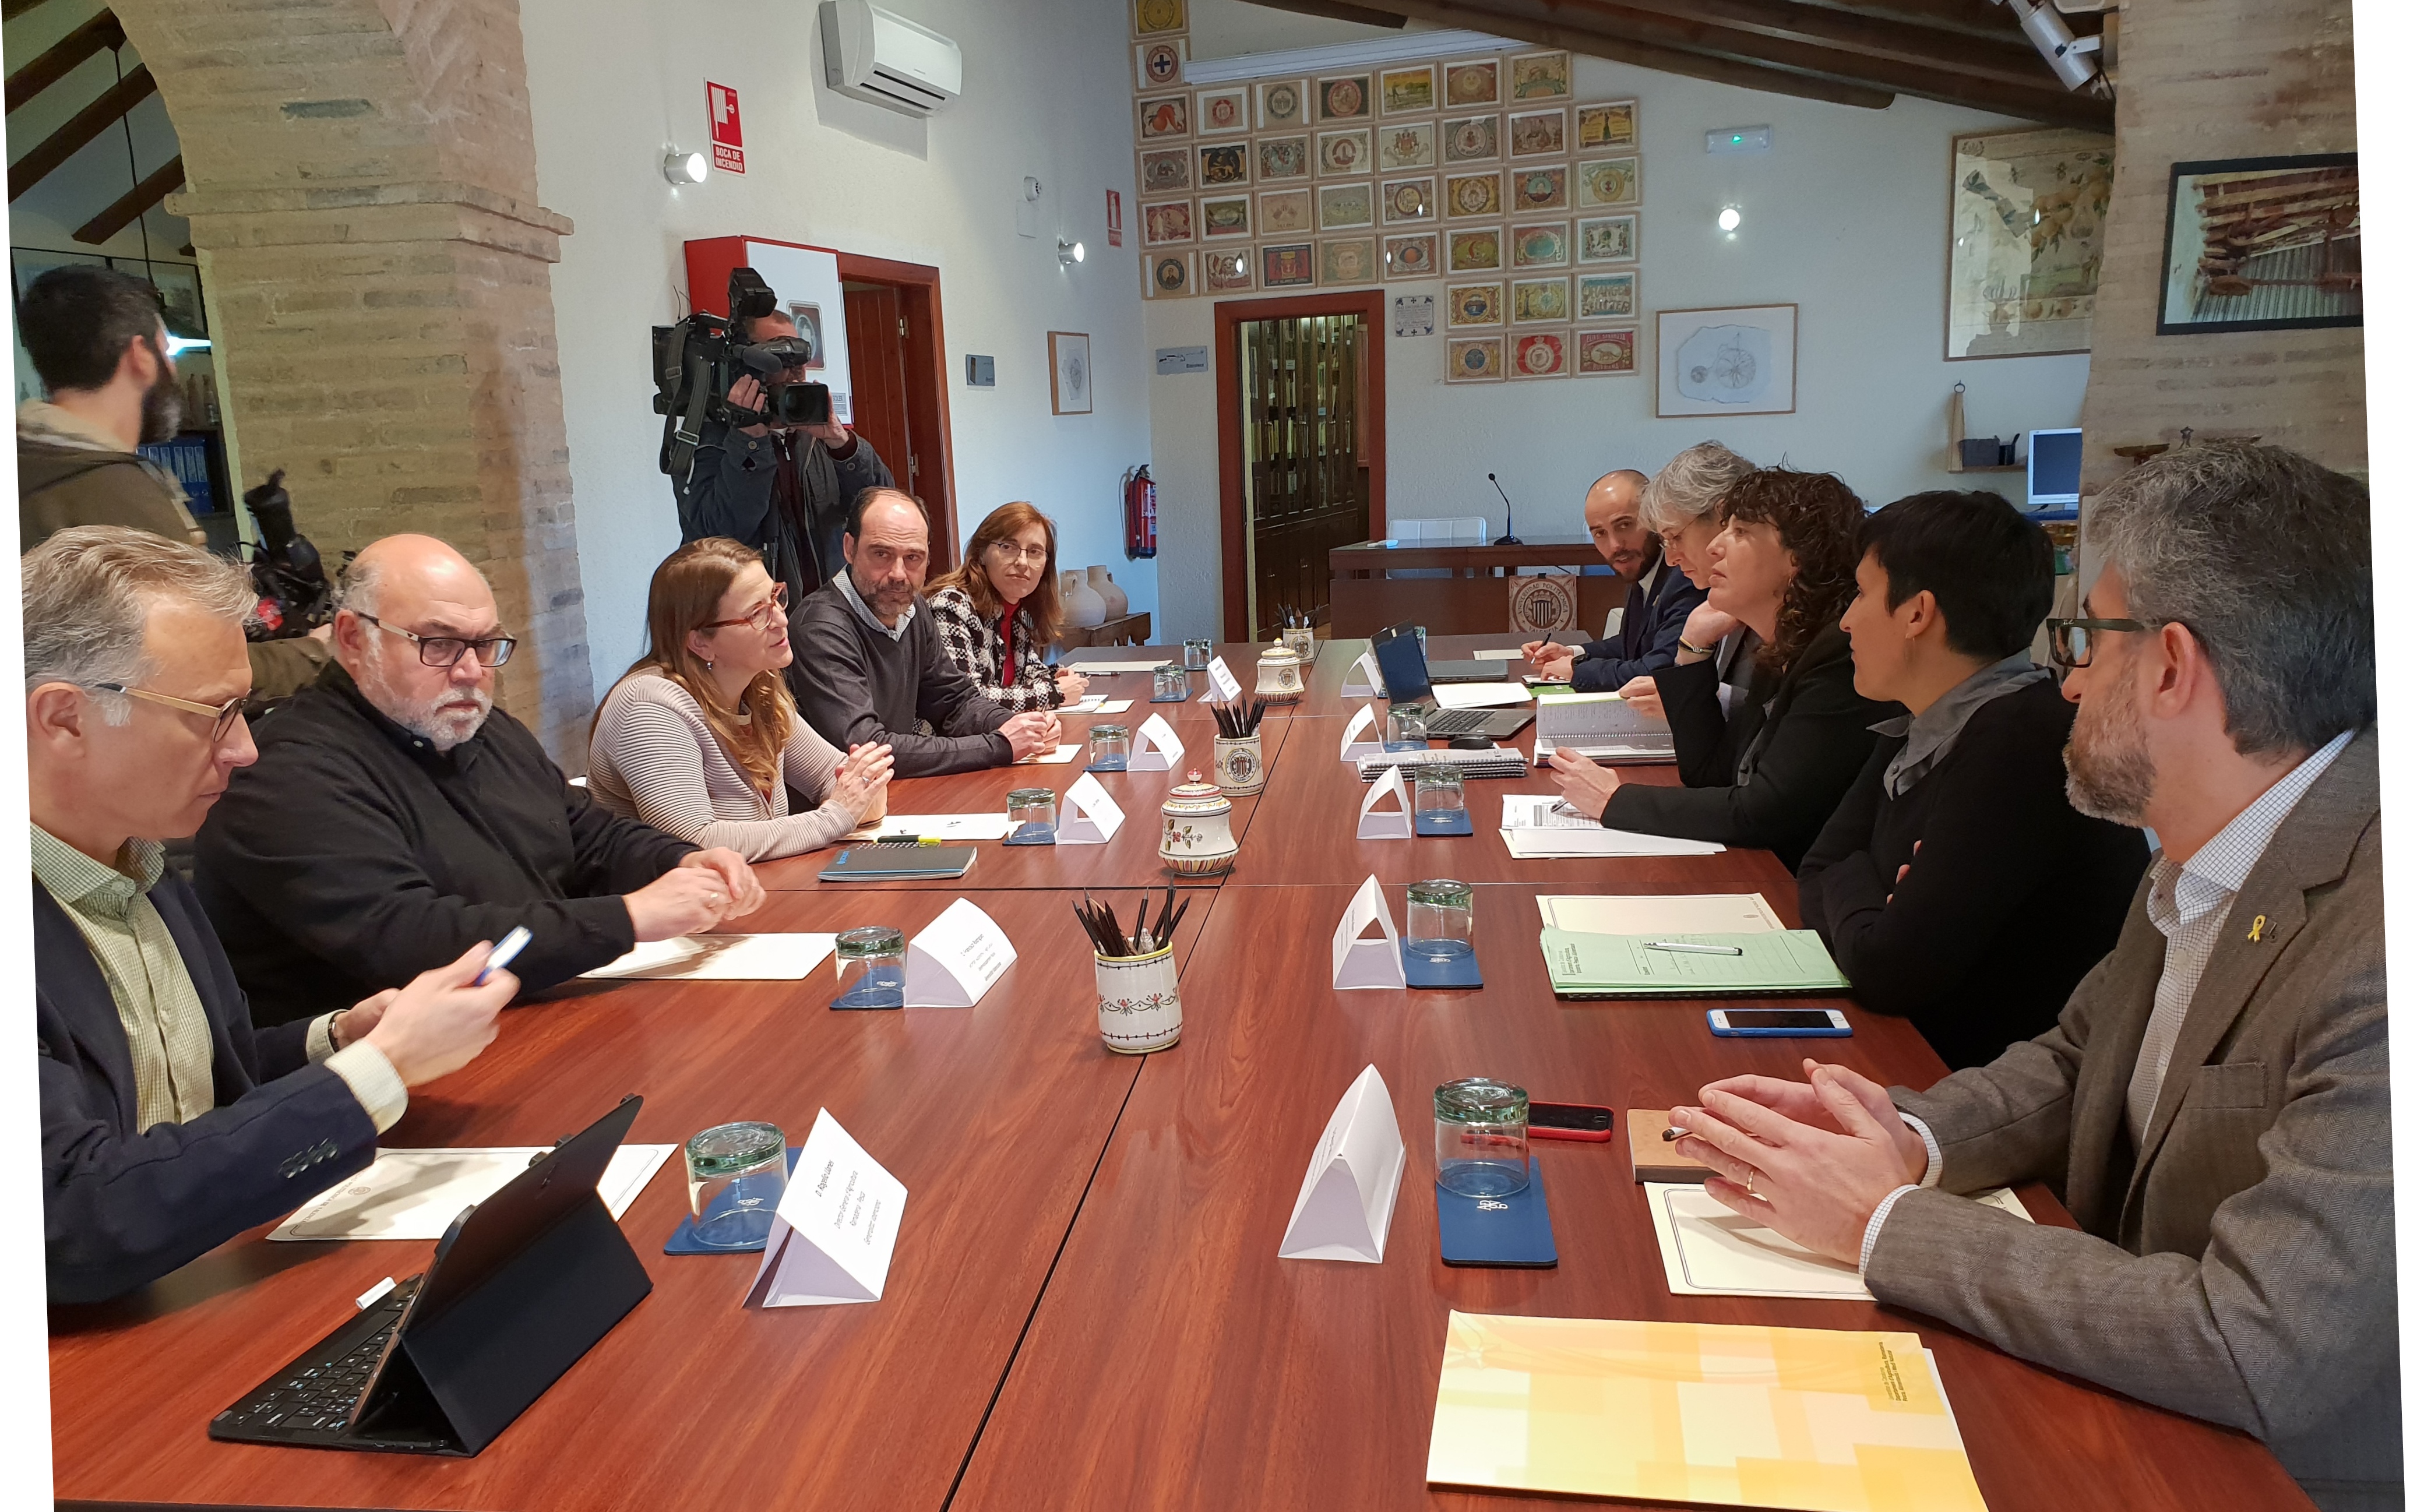 Les conselleries d"Agricultura de la Comunitat Valenciana i Catalunya acorden treballar per la defensa conjunta d"una "visió mediterrània" en la reforma de la PAC i el model de gestió pesquera